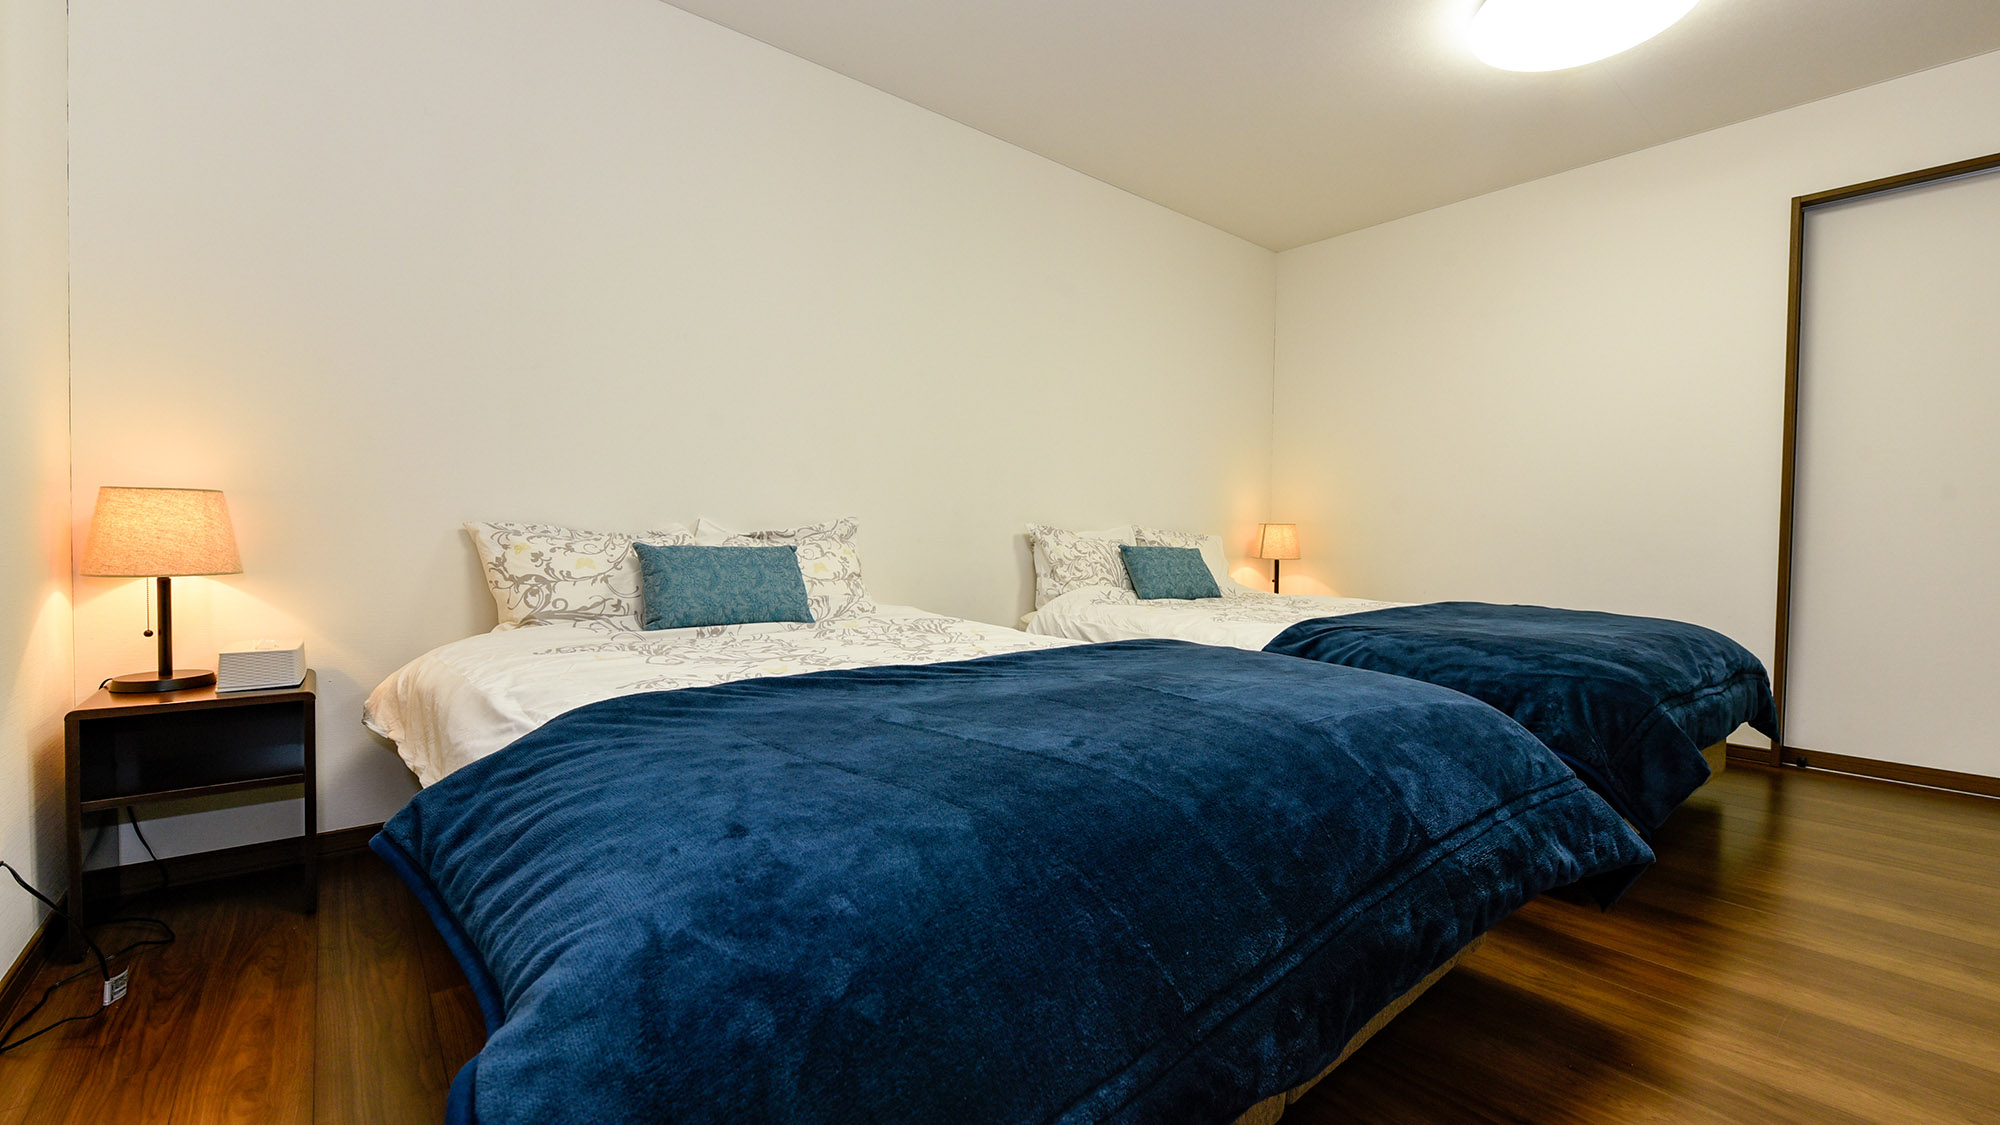 ・【2F寝室】ダブルベッド2台設置。清潔感あふれるお部屋でゆっくりお休みいただけます